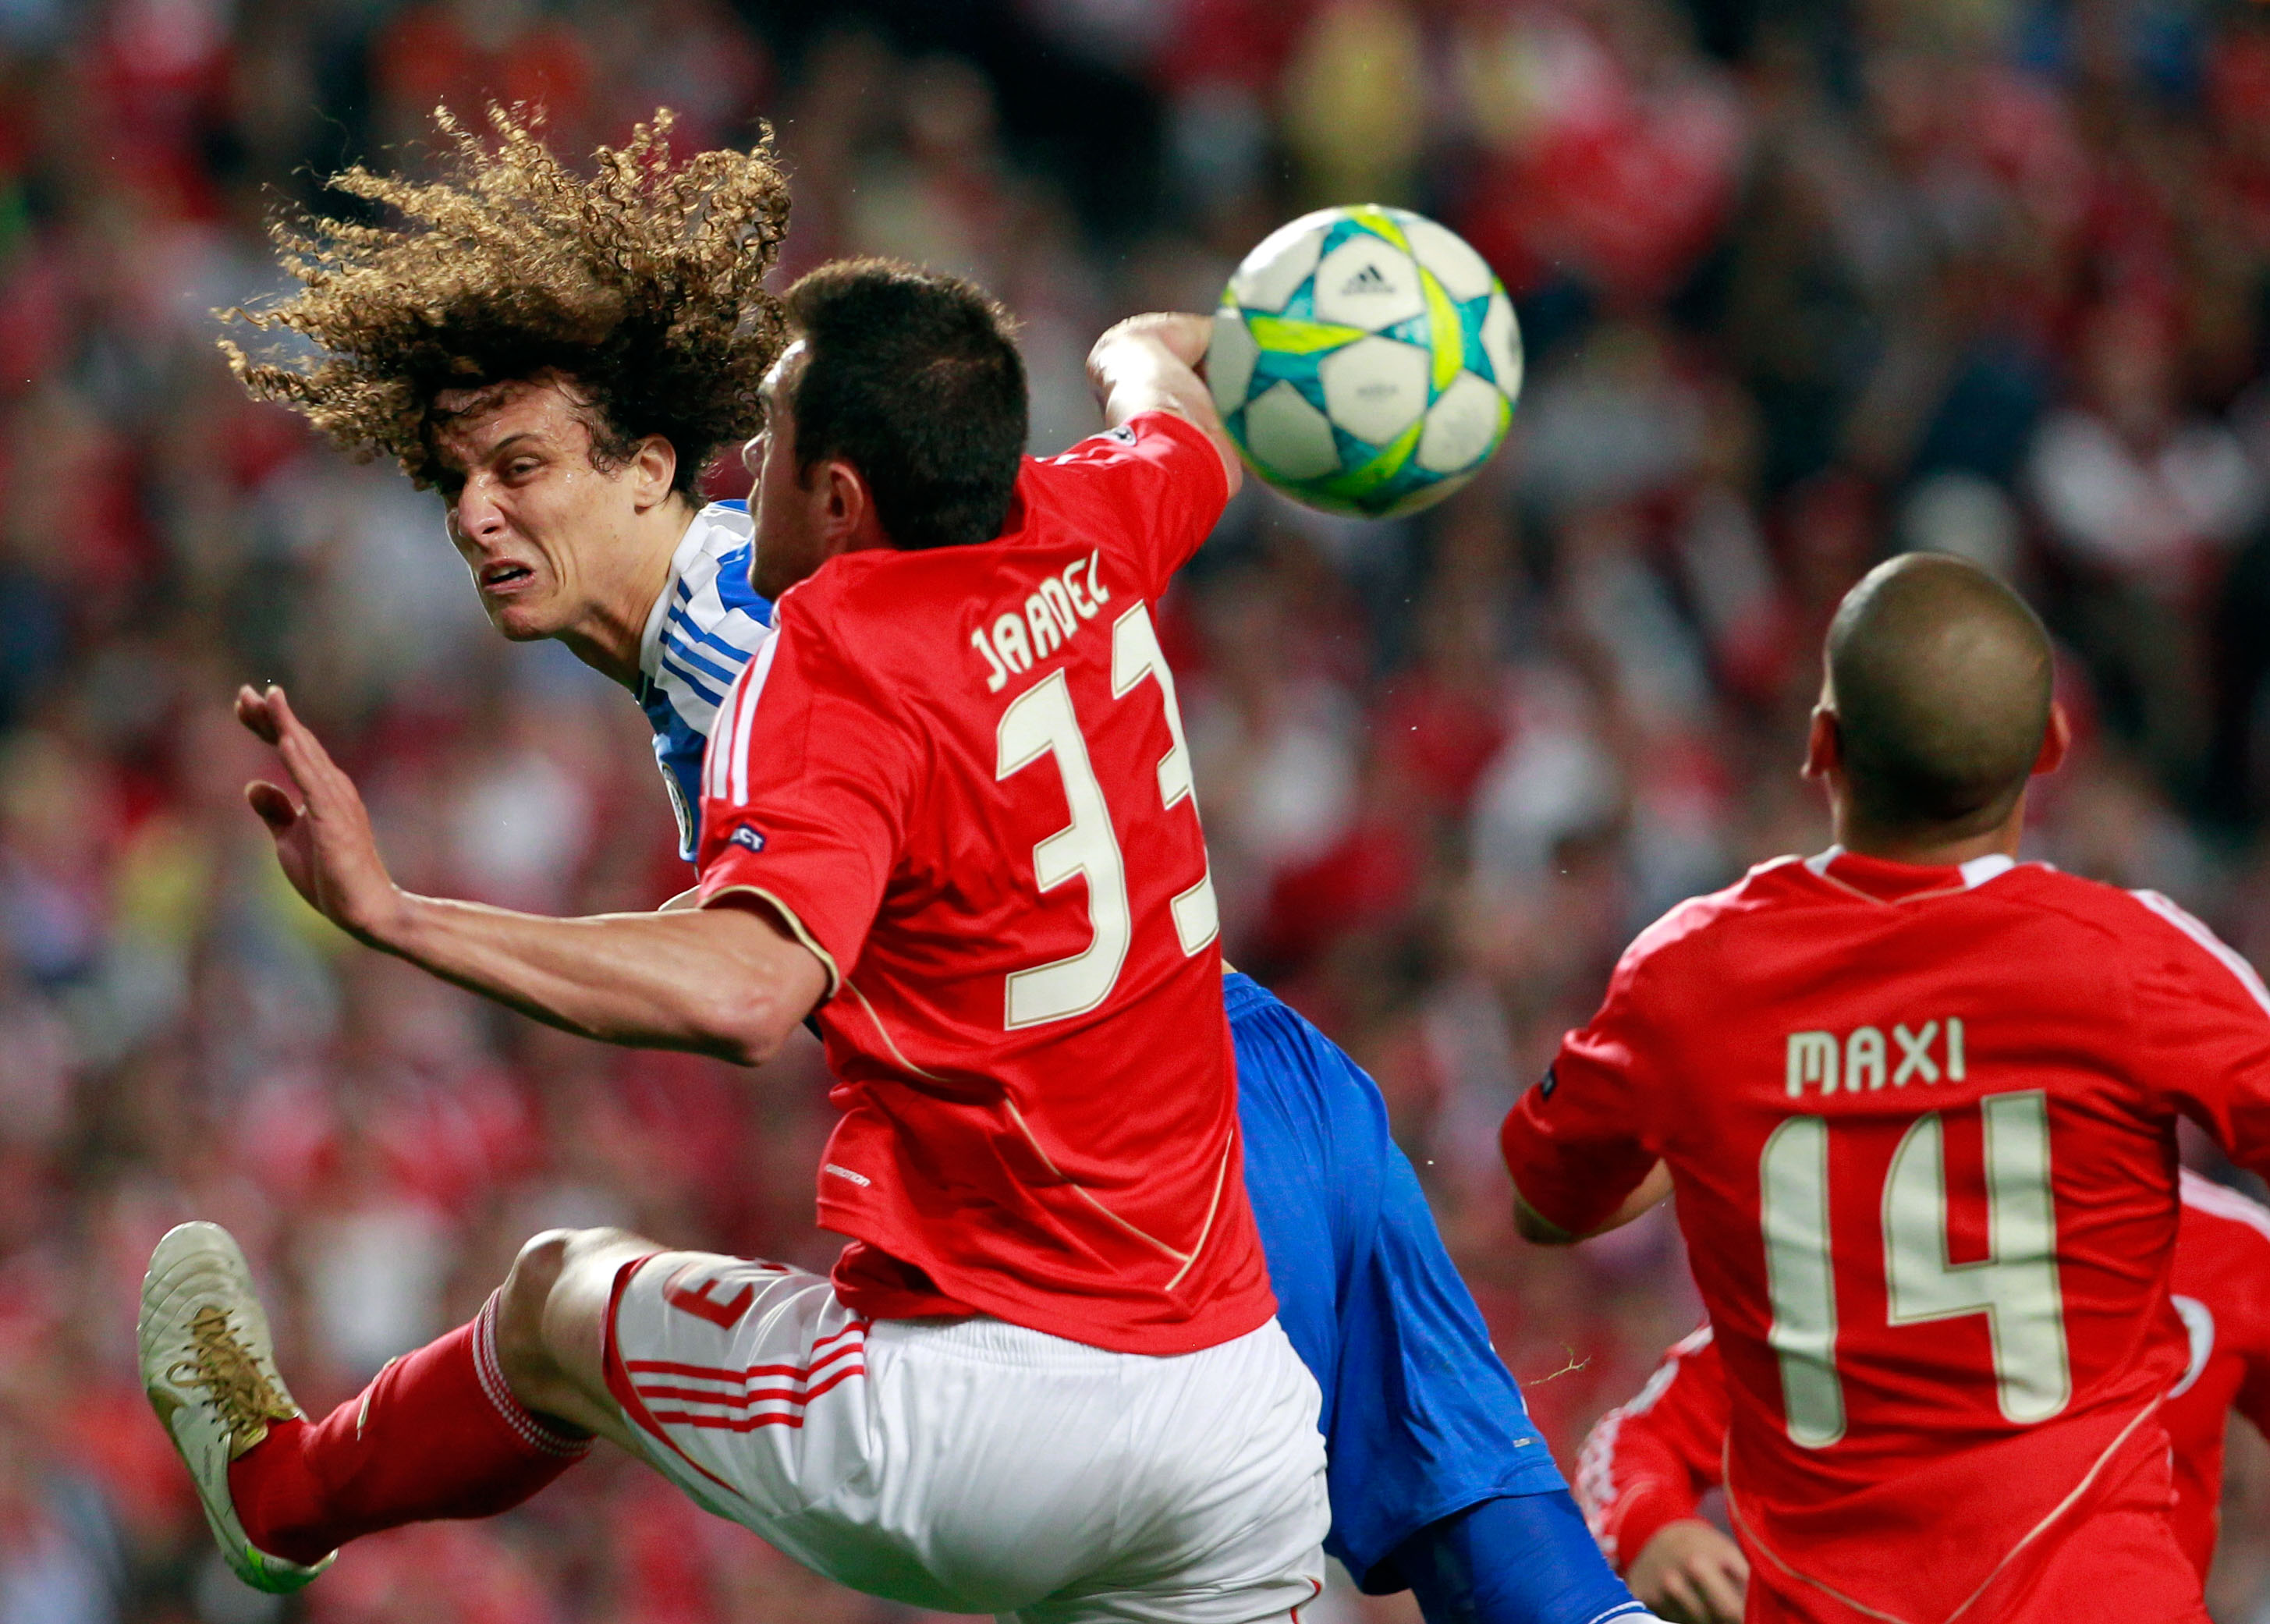 Den hetlevrade David Luiz når högst mot Jardel och Maxi Pereira i Benfica.